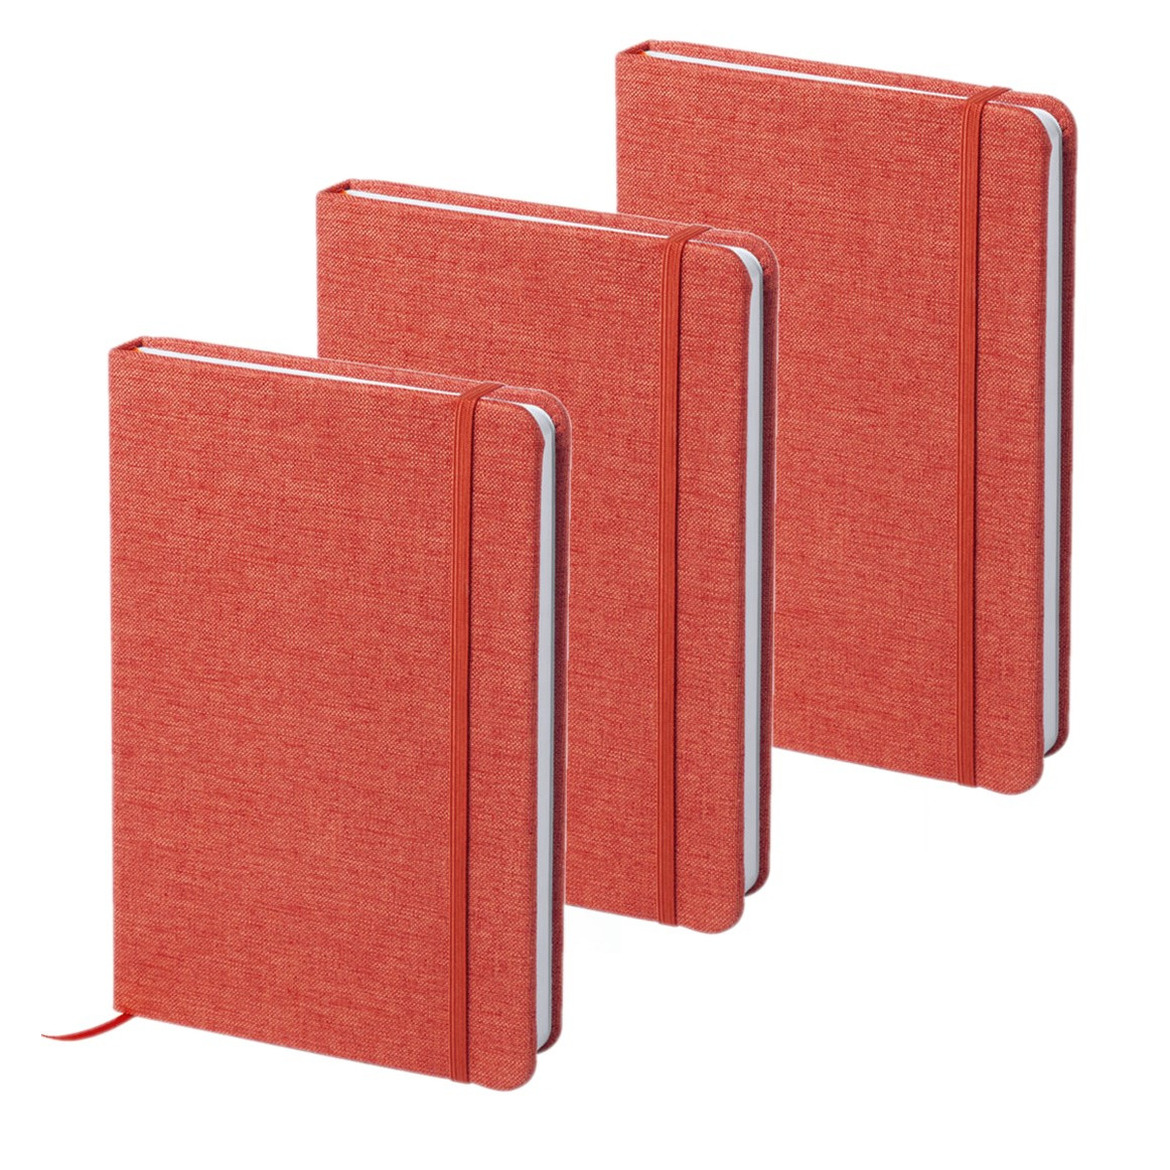 Set van 6x stuks notitieboekje gelinieerd canvas kaft rood met elastiek 13 x 18 cm